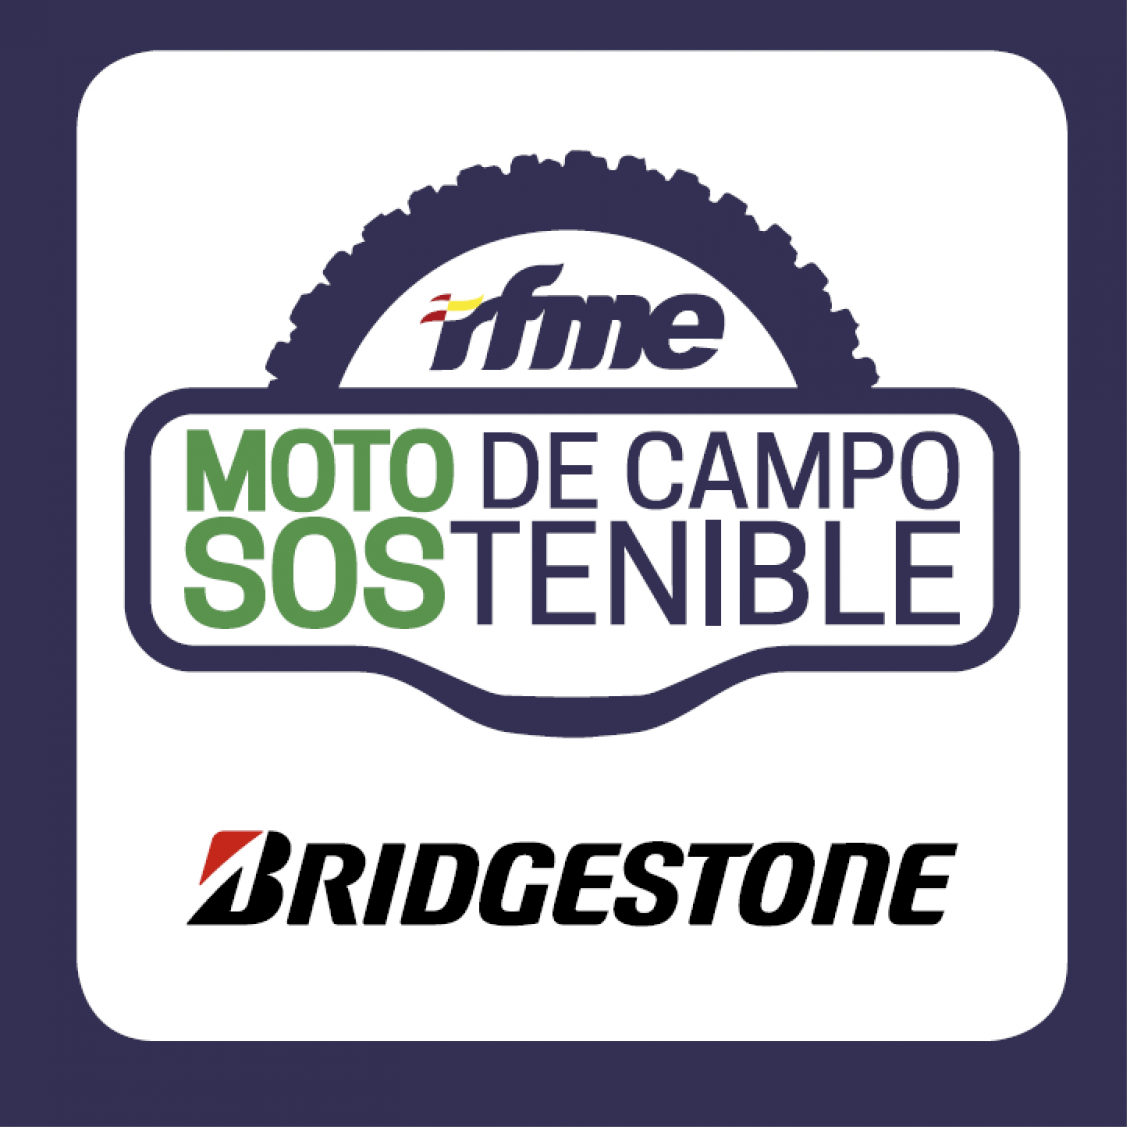 Bridgestone ofrece un 48% de descuento a los usuarios de Moto de Campo Sostenible